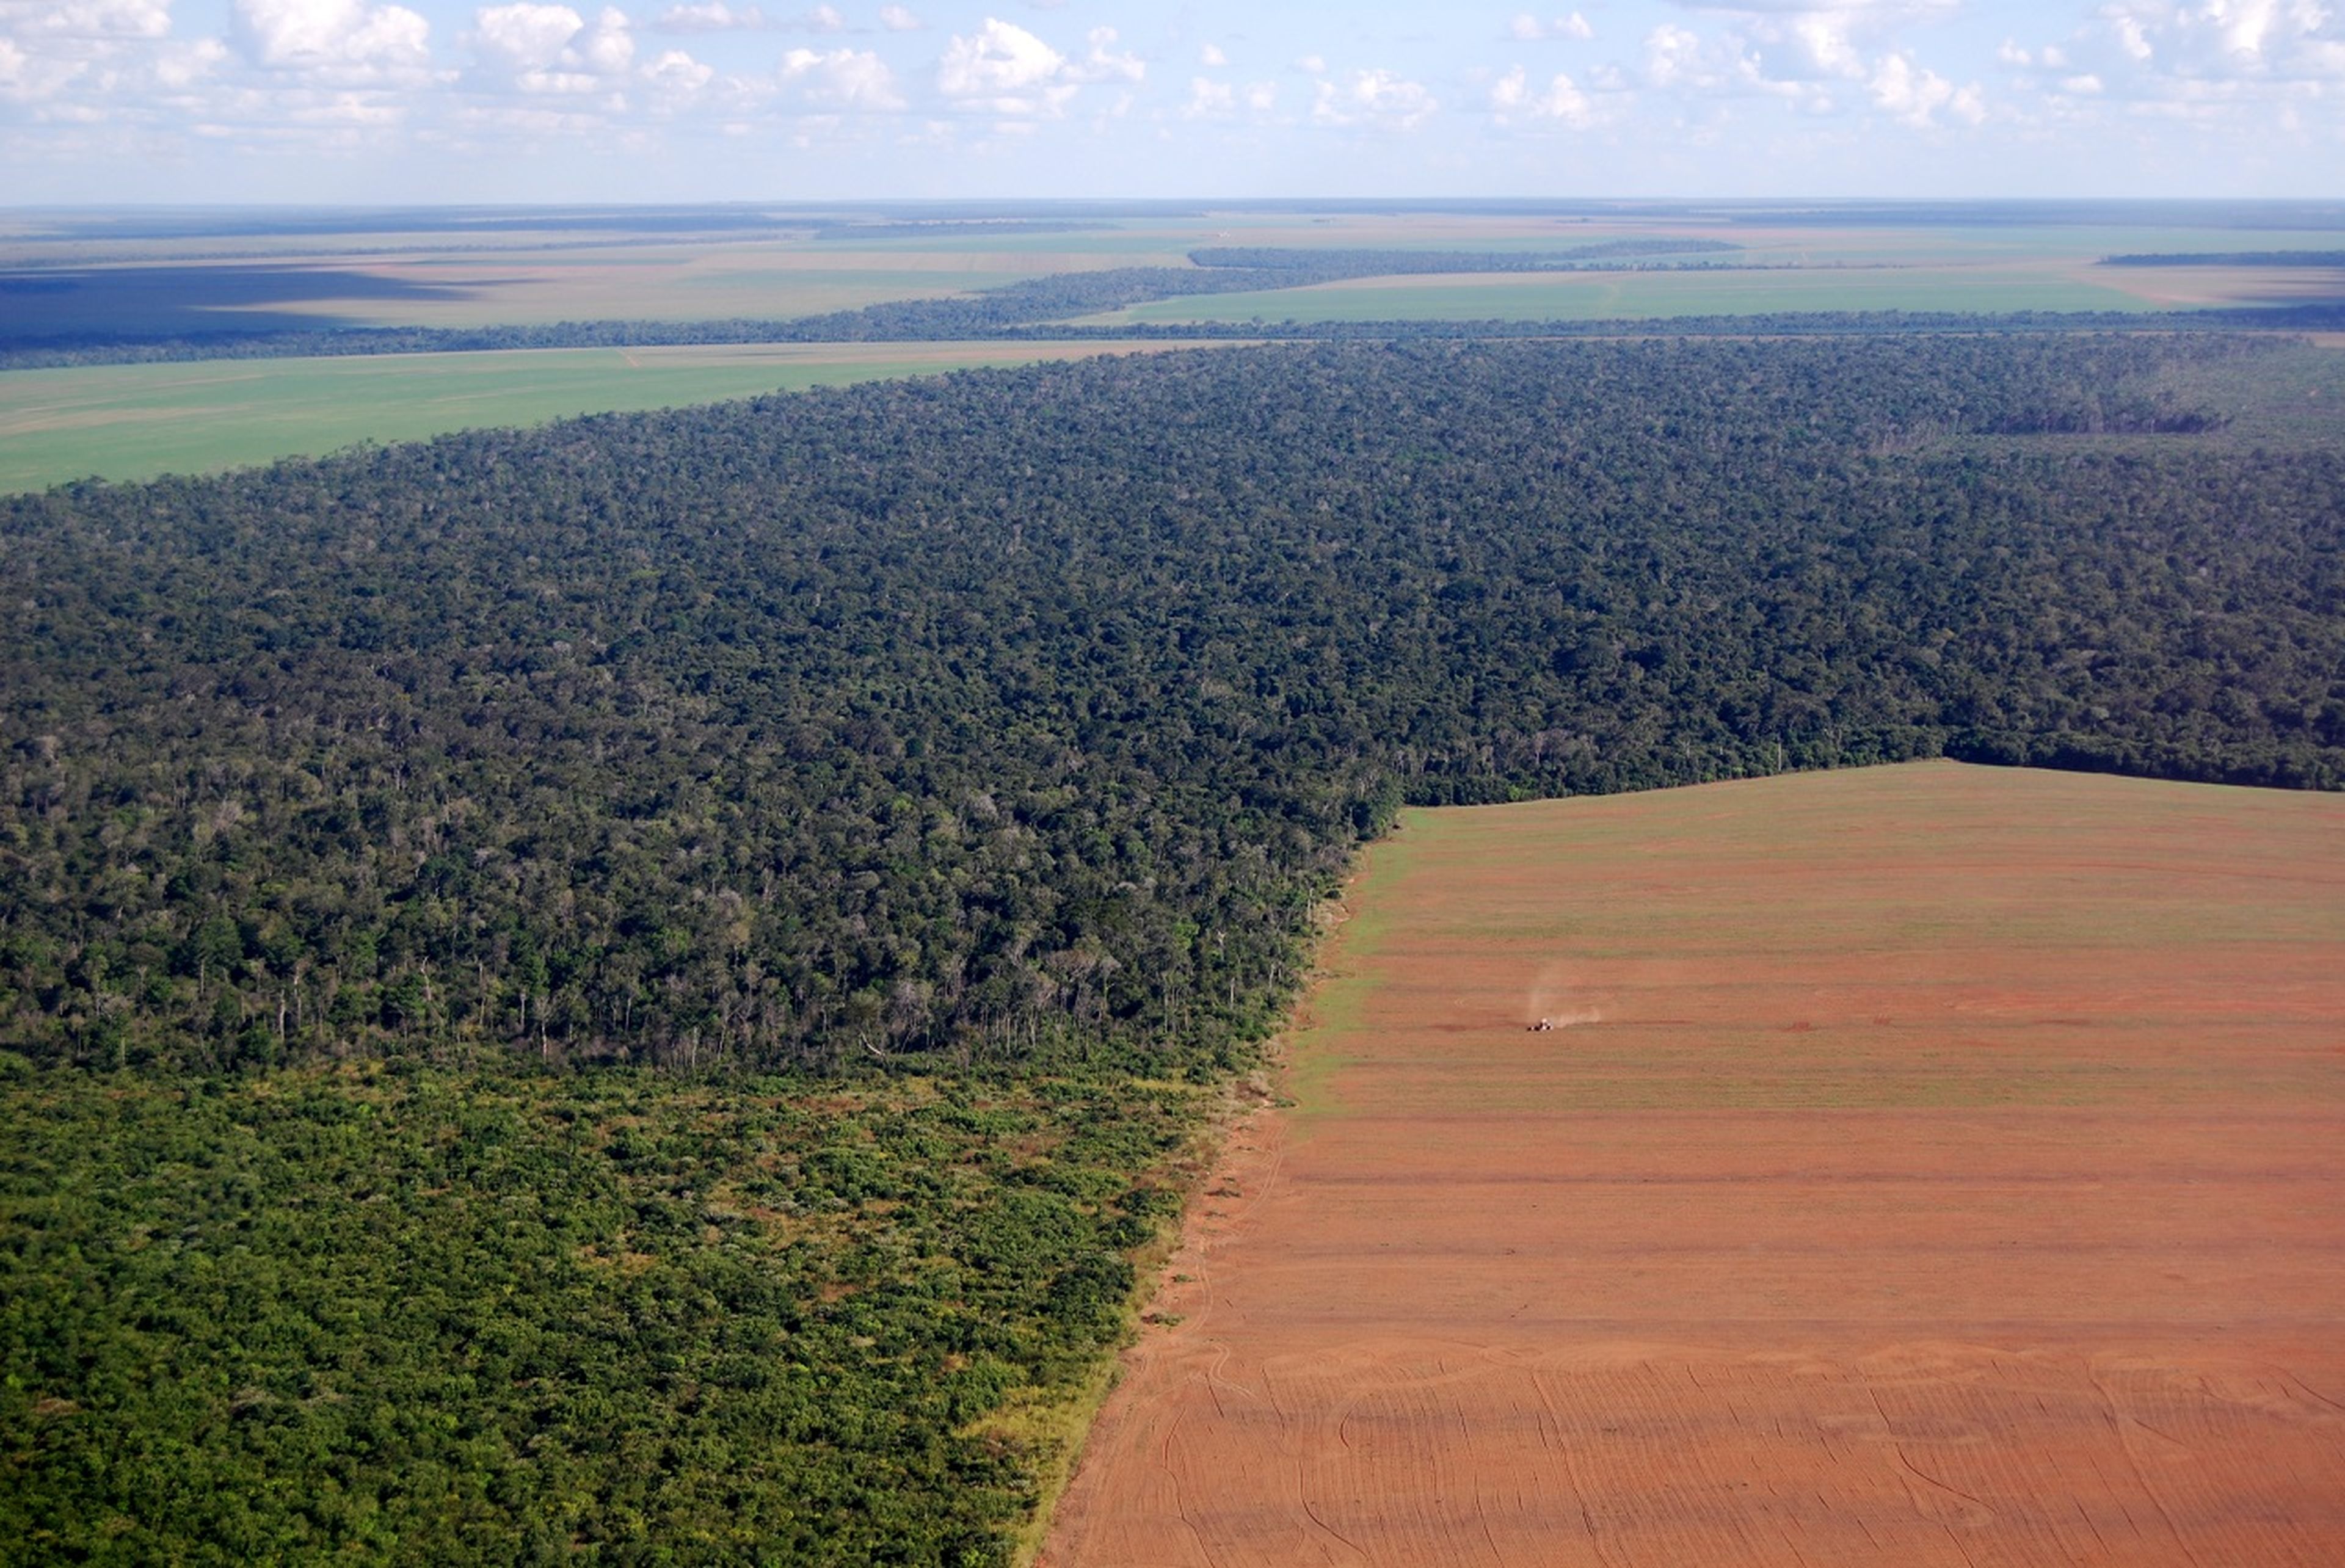 La reforestación a escala mundial tiene un gran potencial para capturar el carbono de la atmósfera y mitigar el cambio climático, pero no se aprovecha su potencial